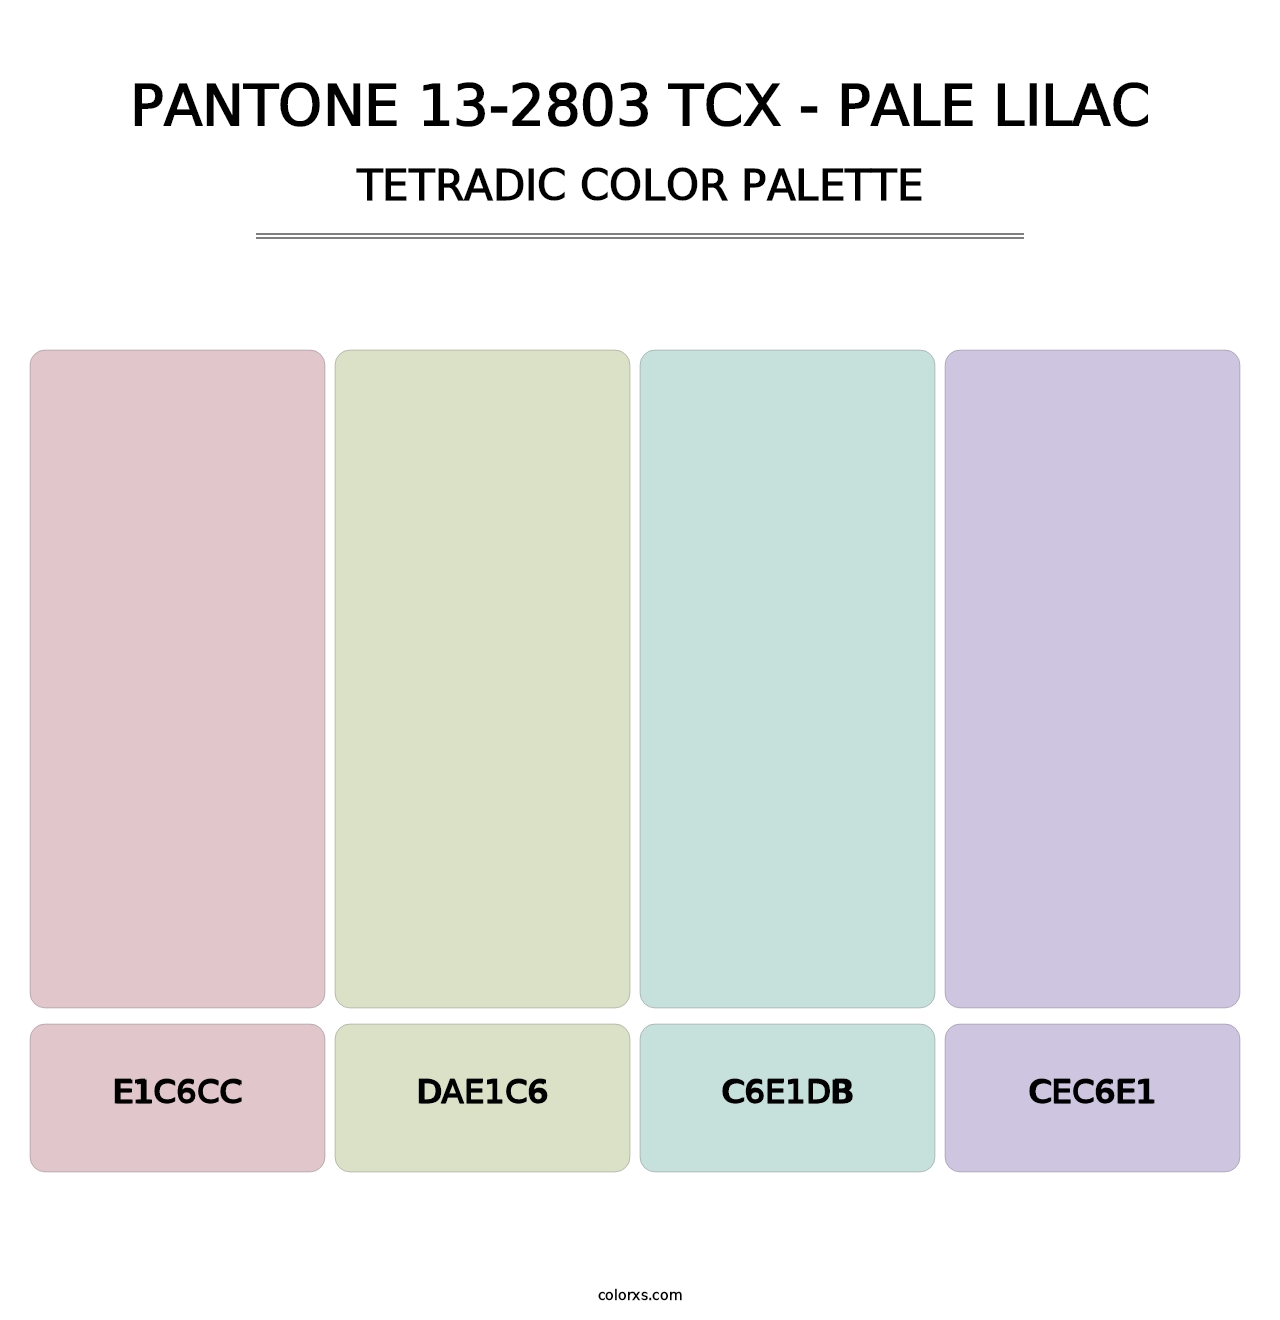 PANTONE 13-2803 TCX - Pale Lilac - Tetradic Color Palette